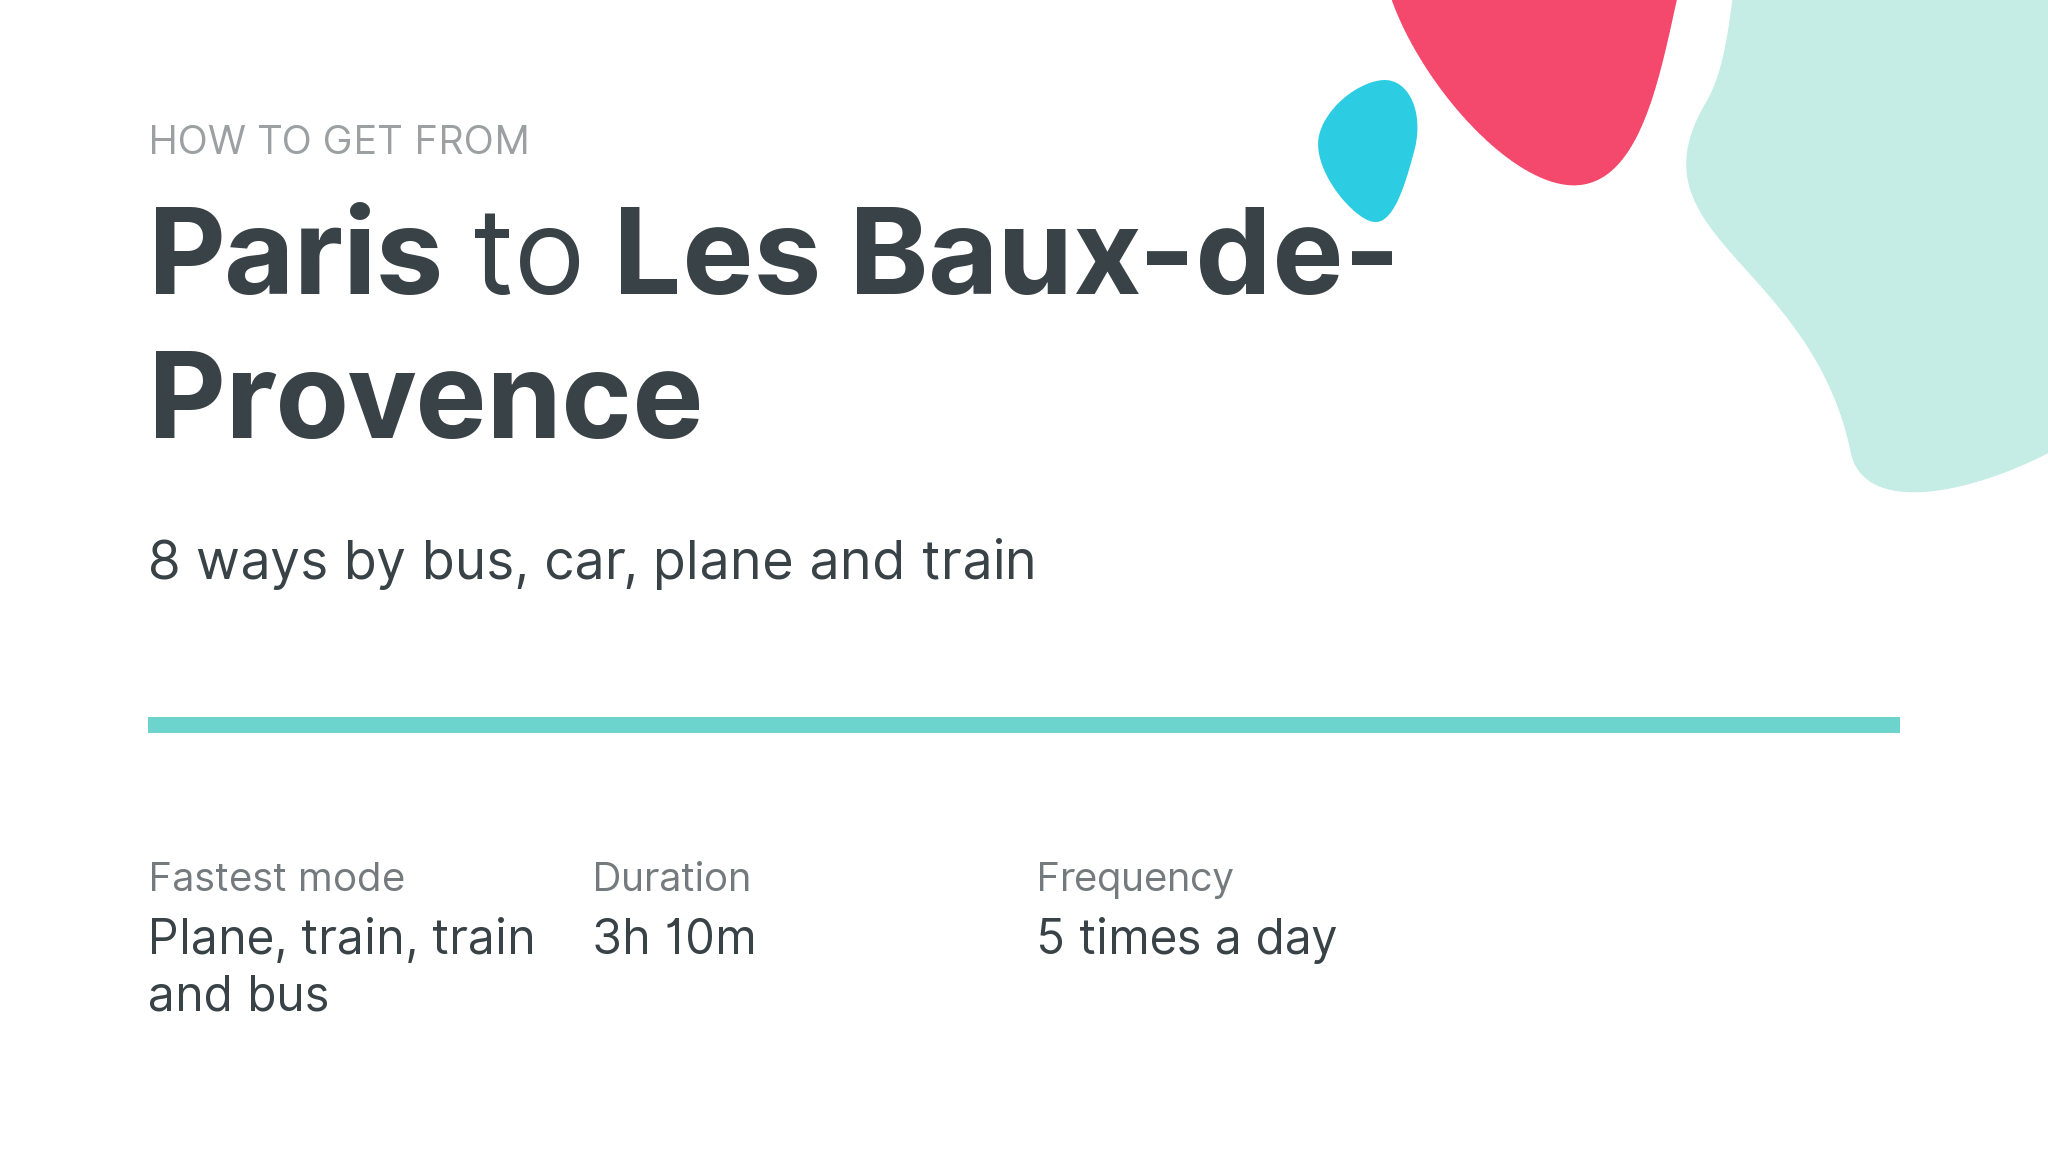 How do I get from Paris to Les Baux-de-Provence